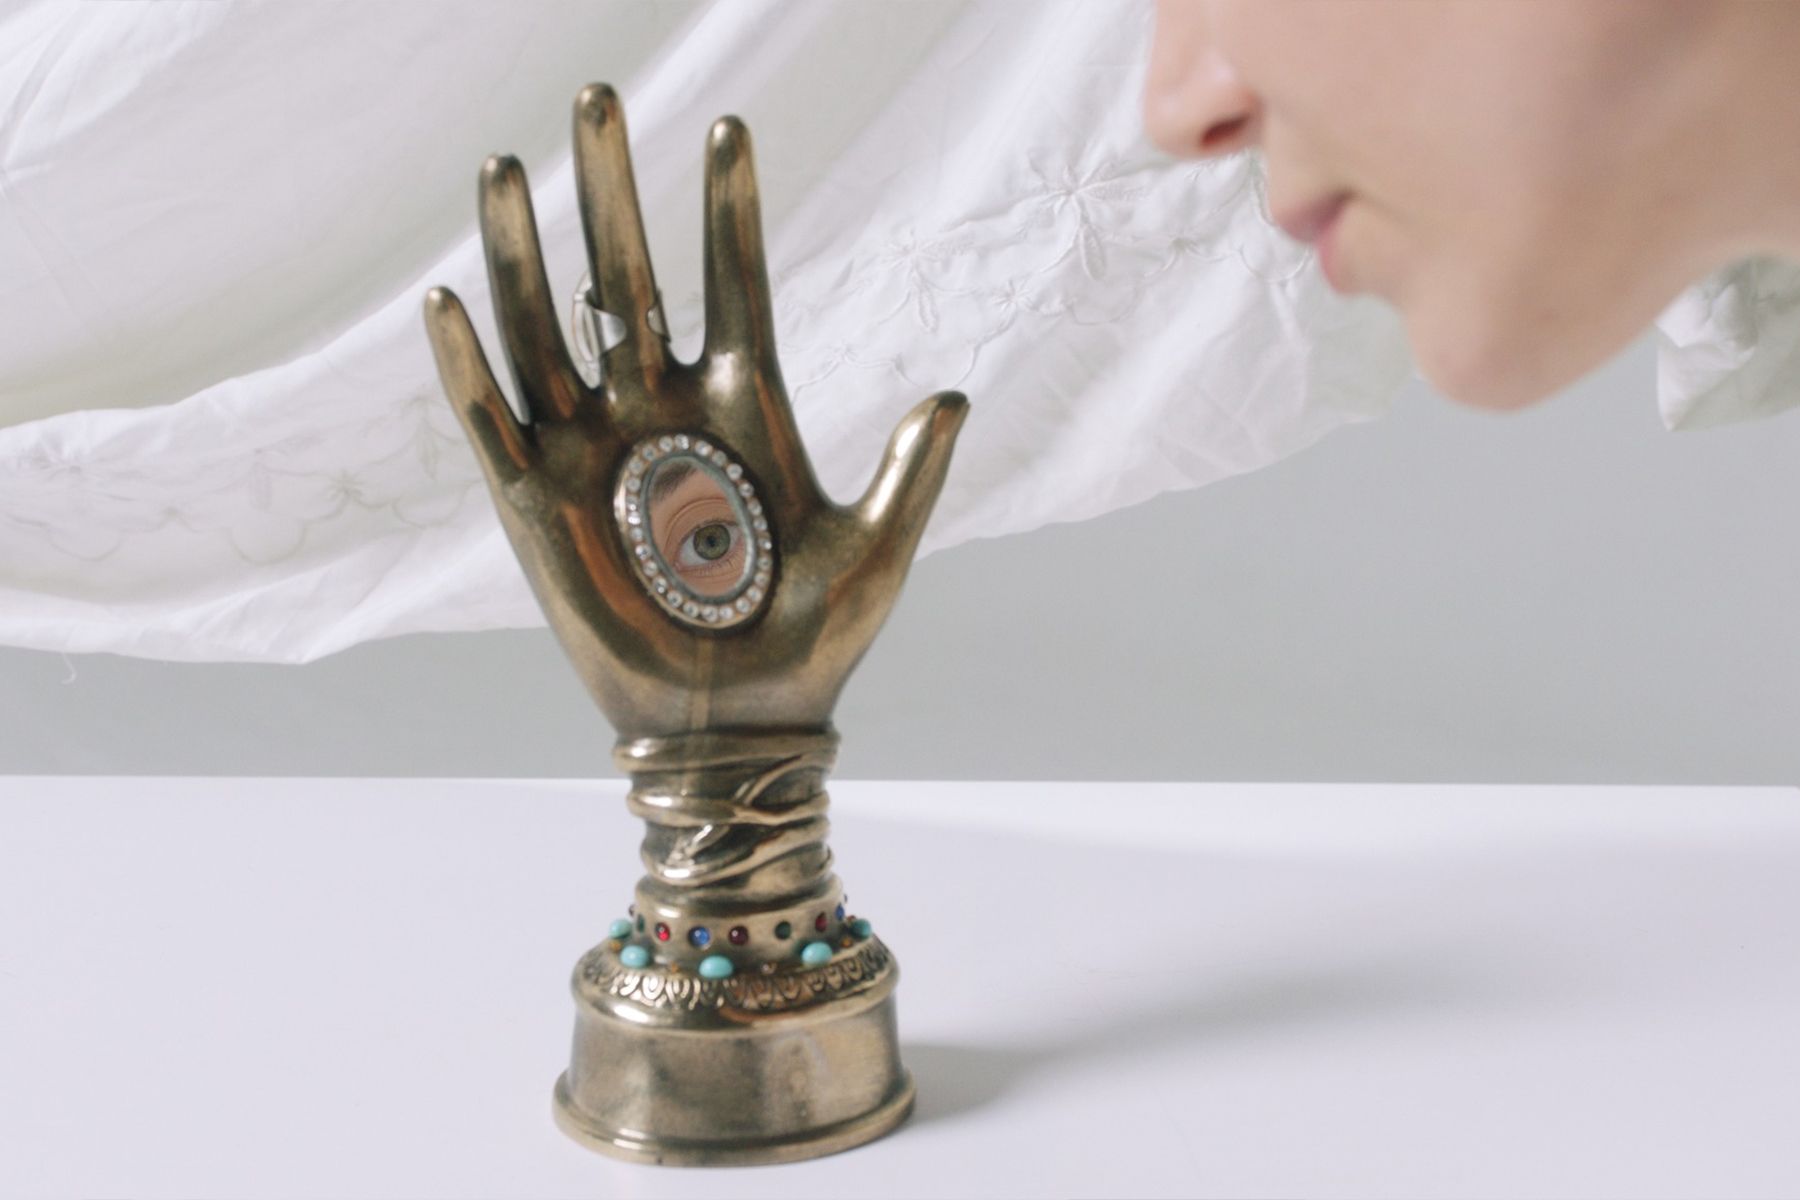 פסל כף יד עשויה ממתכת, עם מראה קטנה שבה משתקפת עין אנושית, ׳Nexus׳, מיצב וידיאו/סאונד, אלנה צ'רטי שטיין, 2022